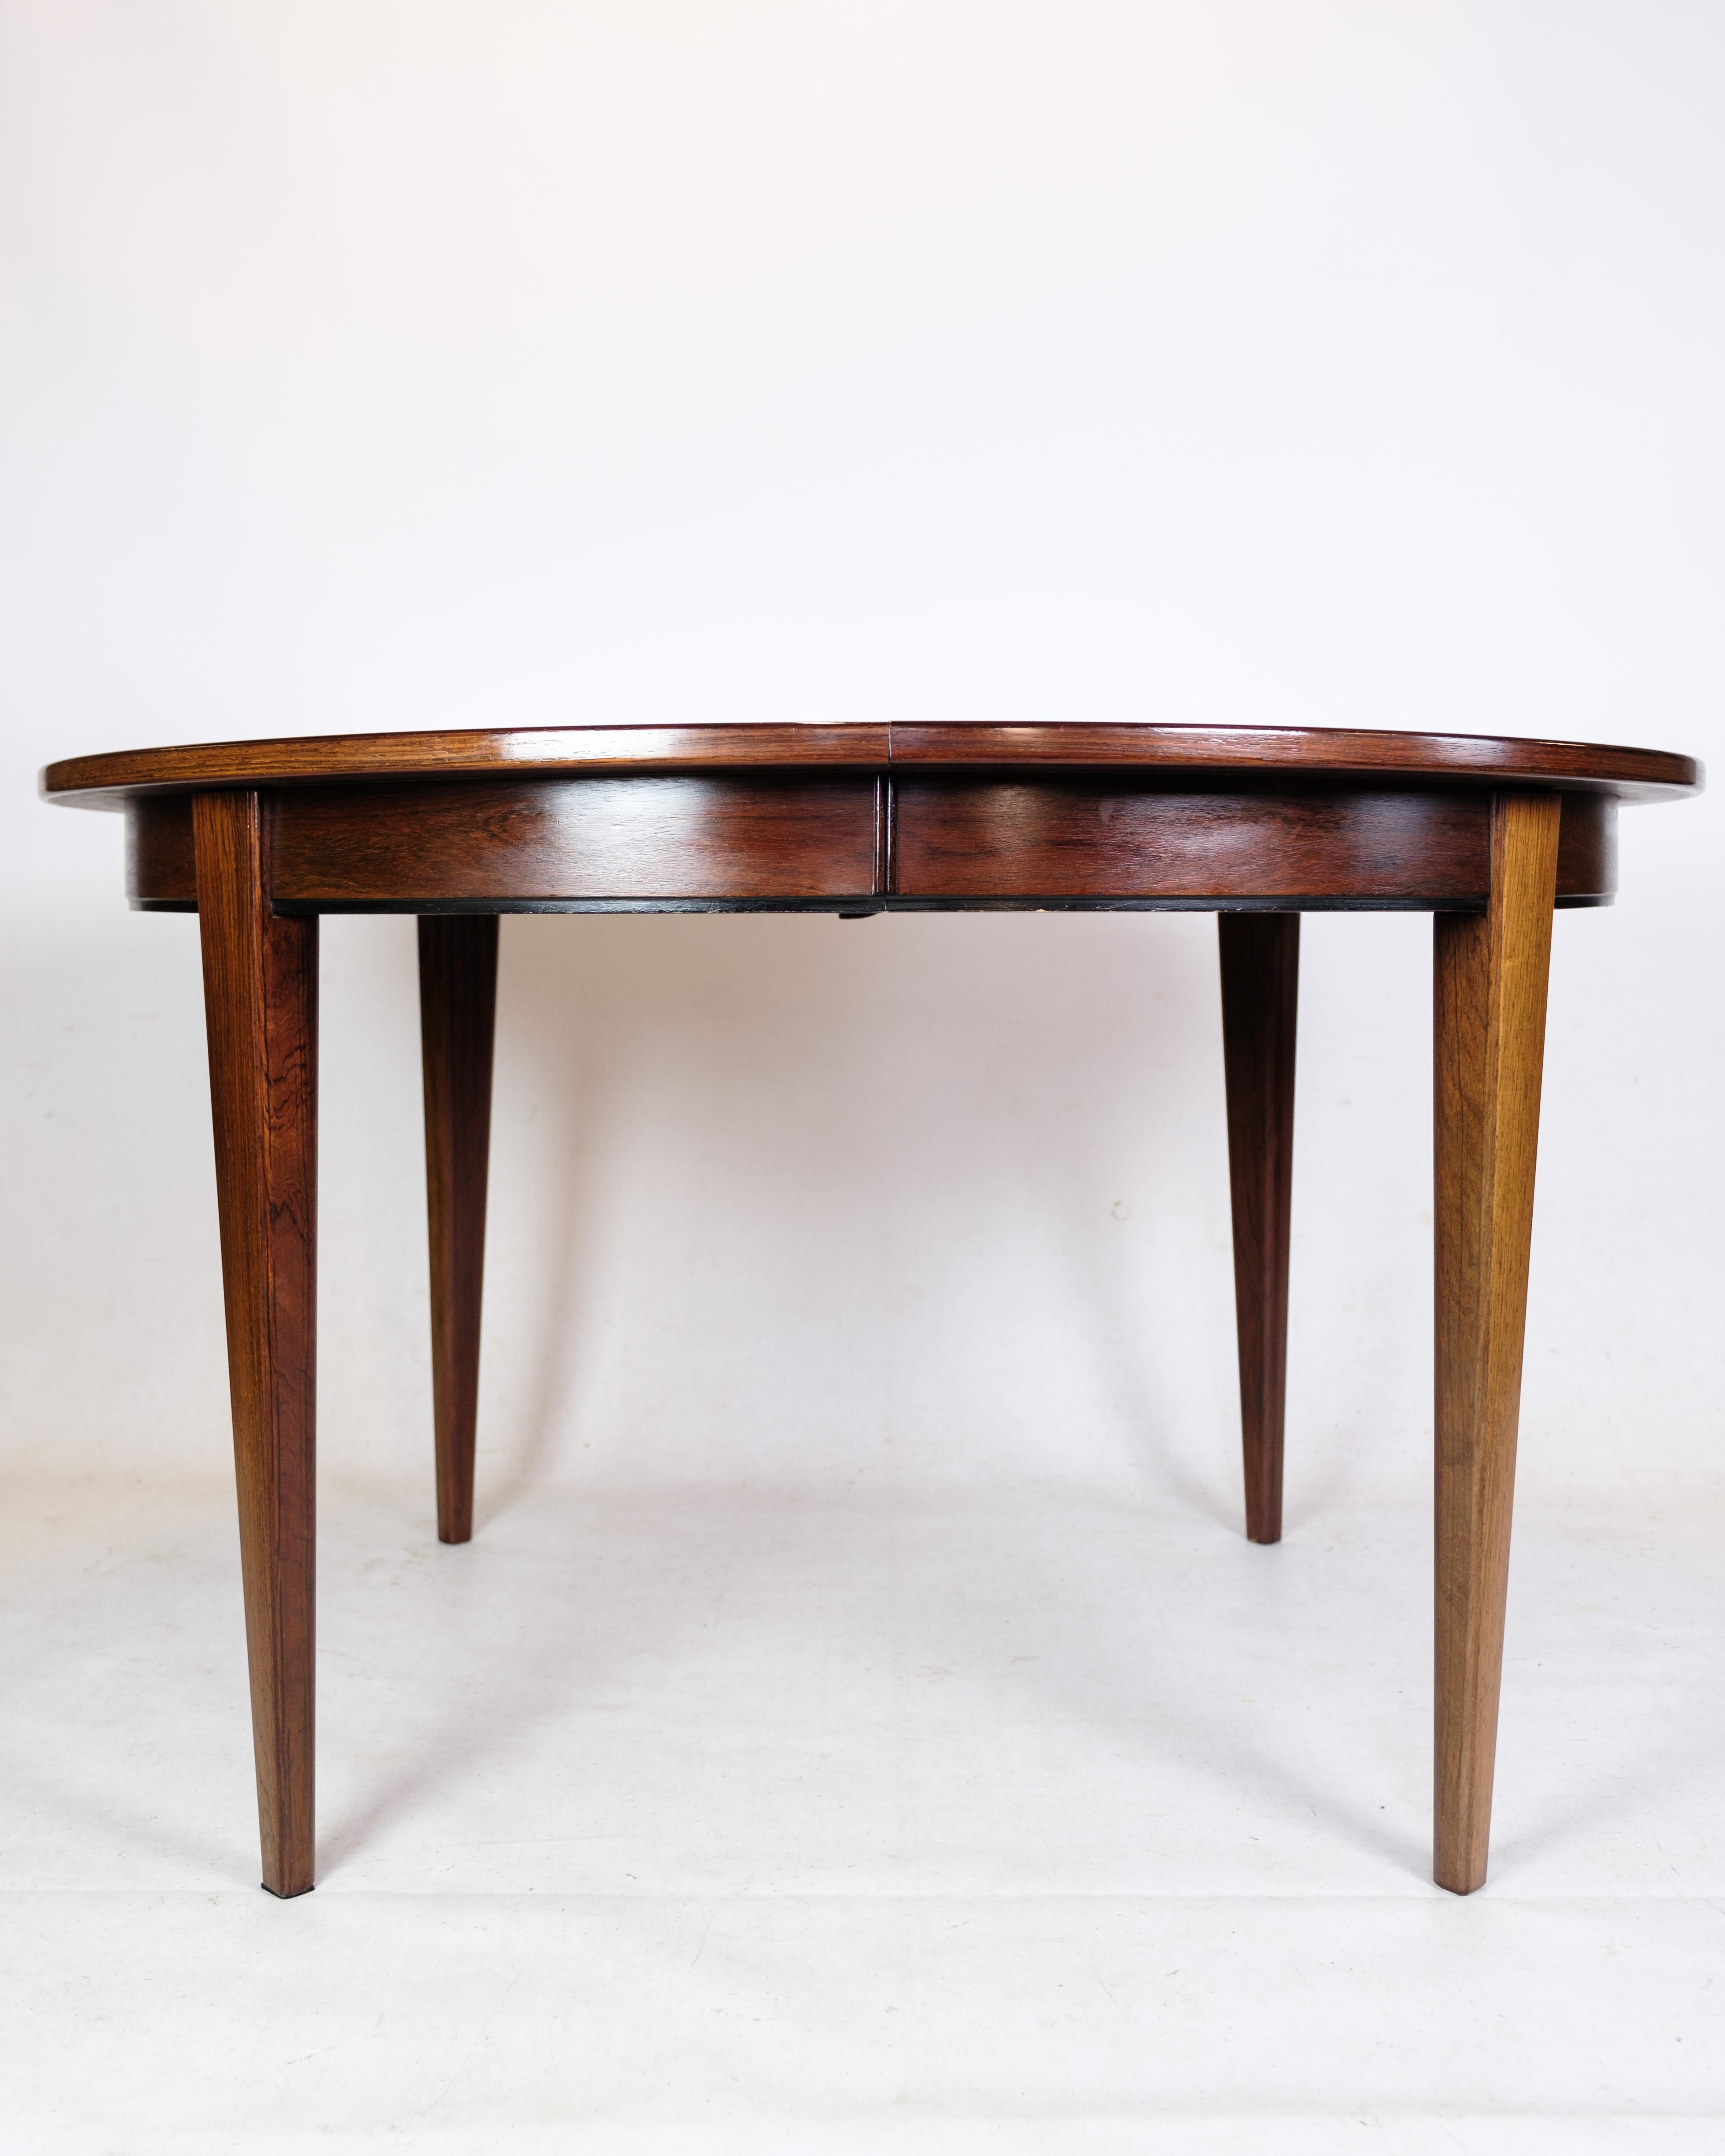 La table de salle à manger en bois de rose, conçue par Design/One Jun. A/S, modèle no. 55 et datant d'environ les années 1960, représente un bel exemple du design de meubles danois du milieu du 20e siècle.

Oman Jun. A/S était réputé pour la qualité